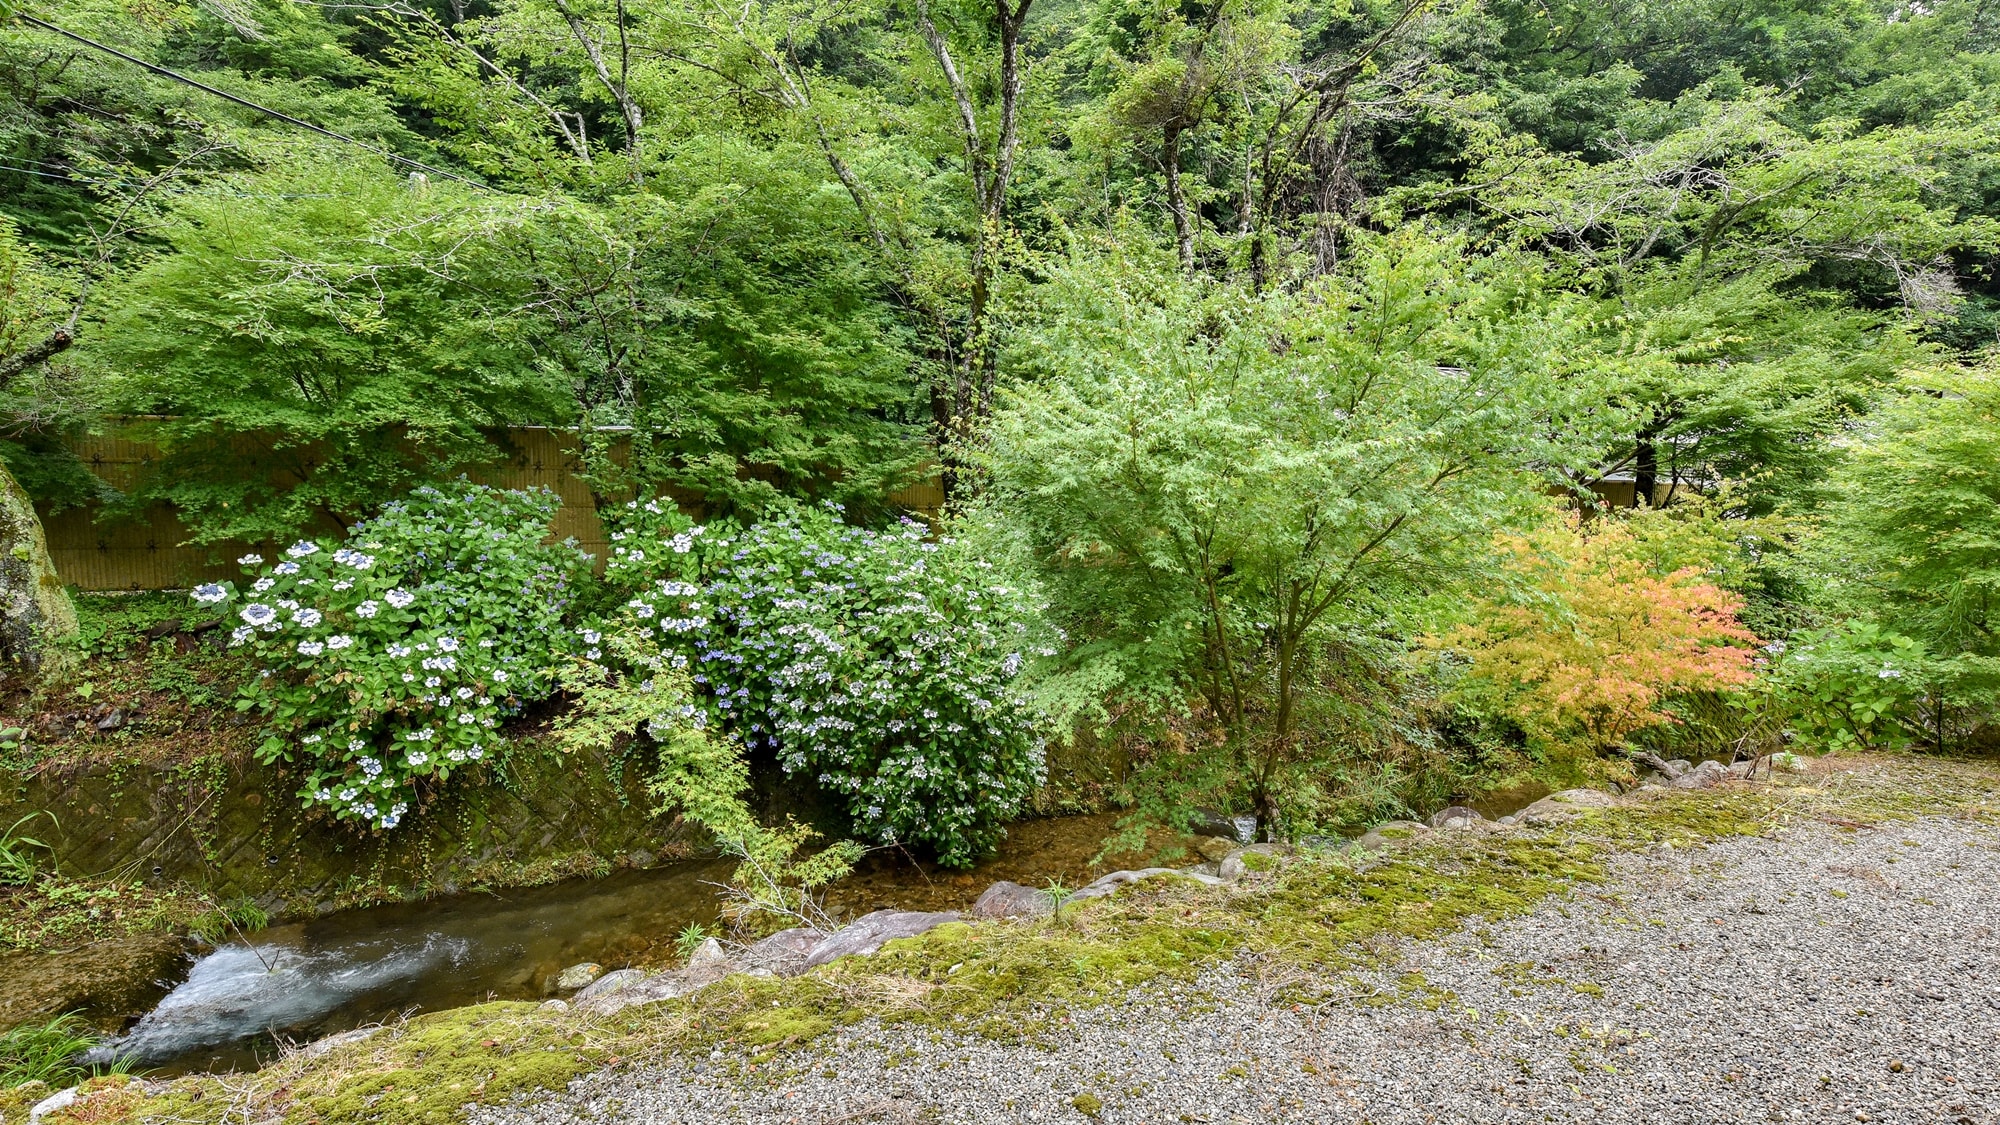 * ■ 日式房间的景色 10张榻榻米 ■ 您可以看到丰富的绿色植物。